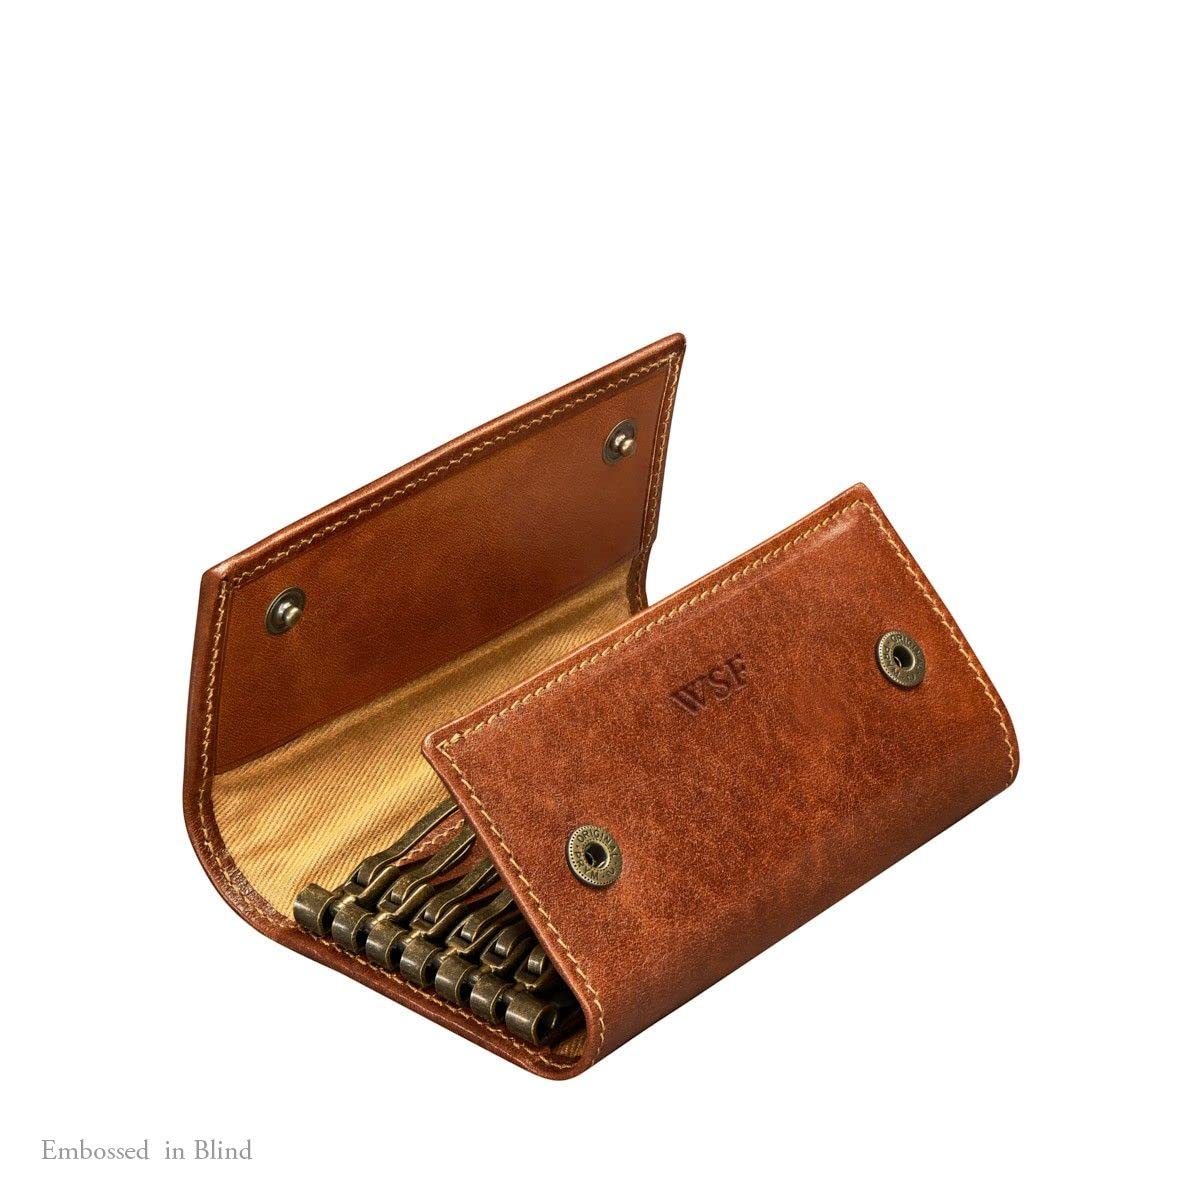 Maxwell Scott | Luxury Leather Key Case Wallet | The Lapo | 6 Hooks Key Holder Pouch for Men Women